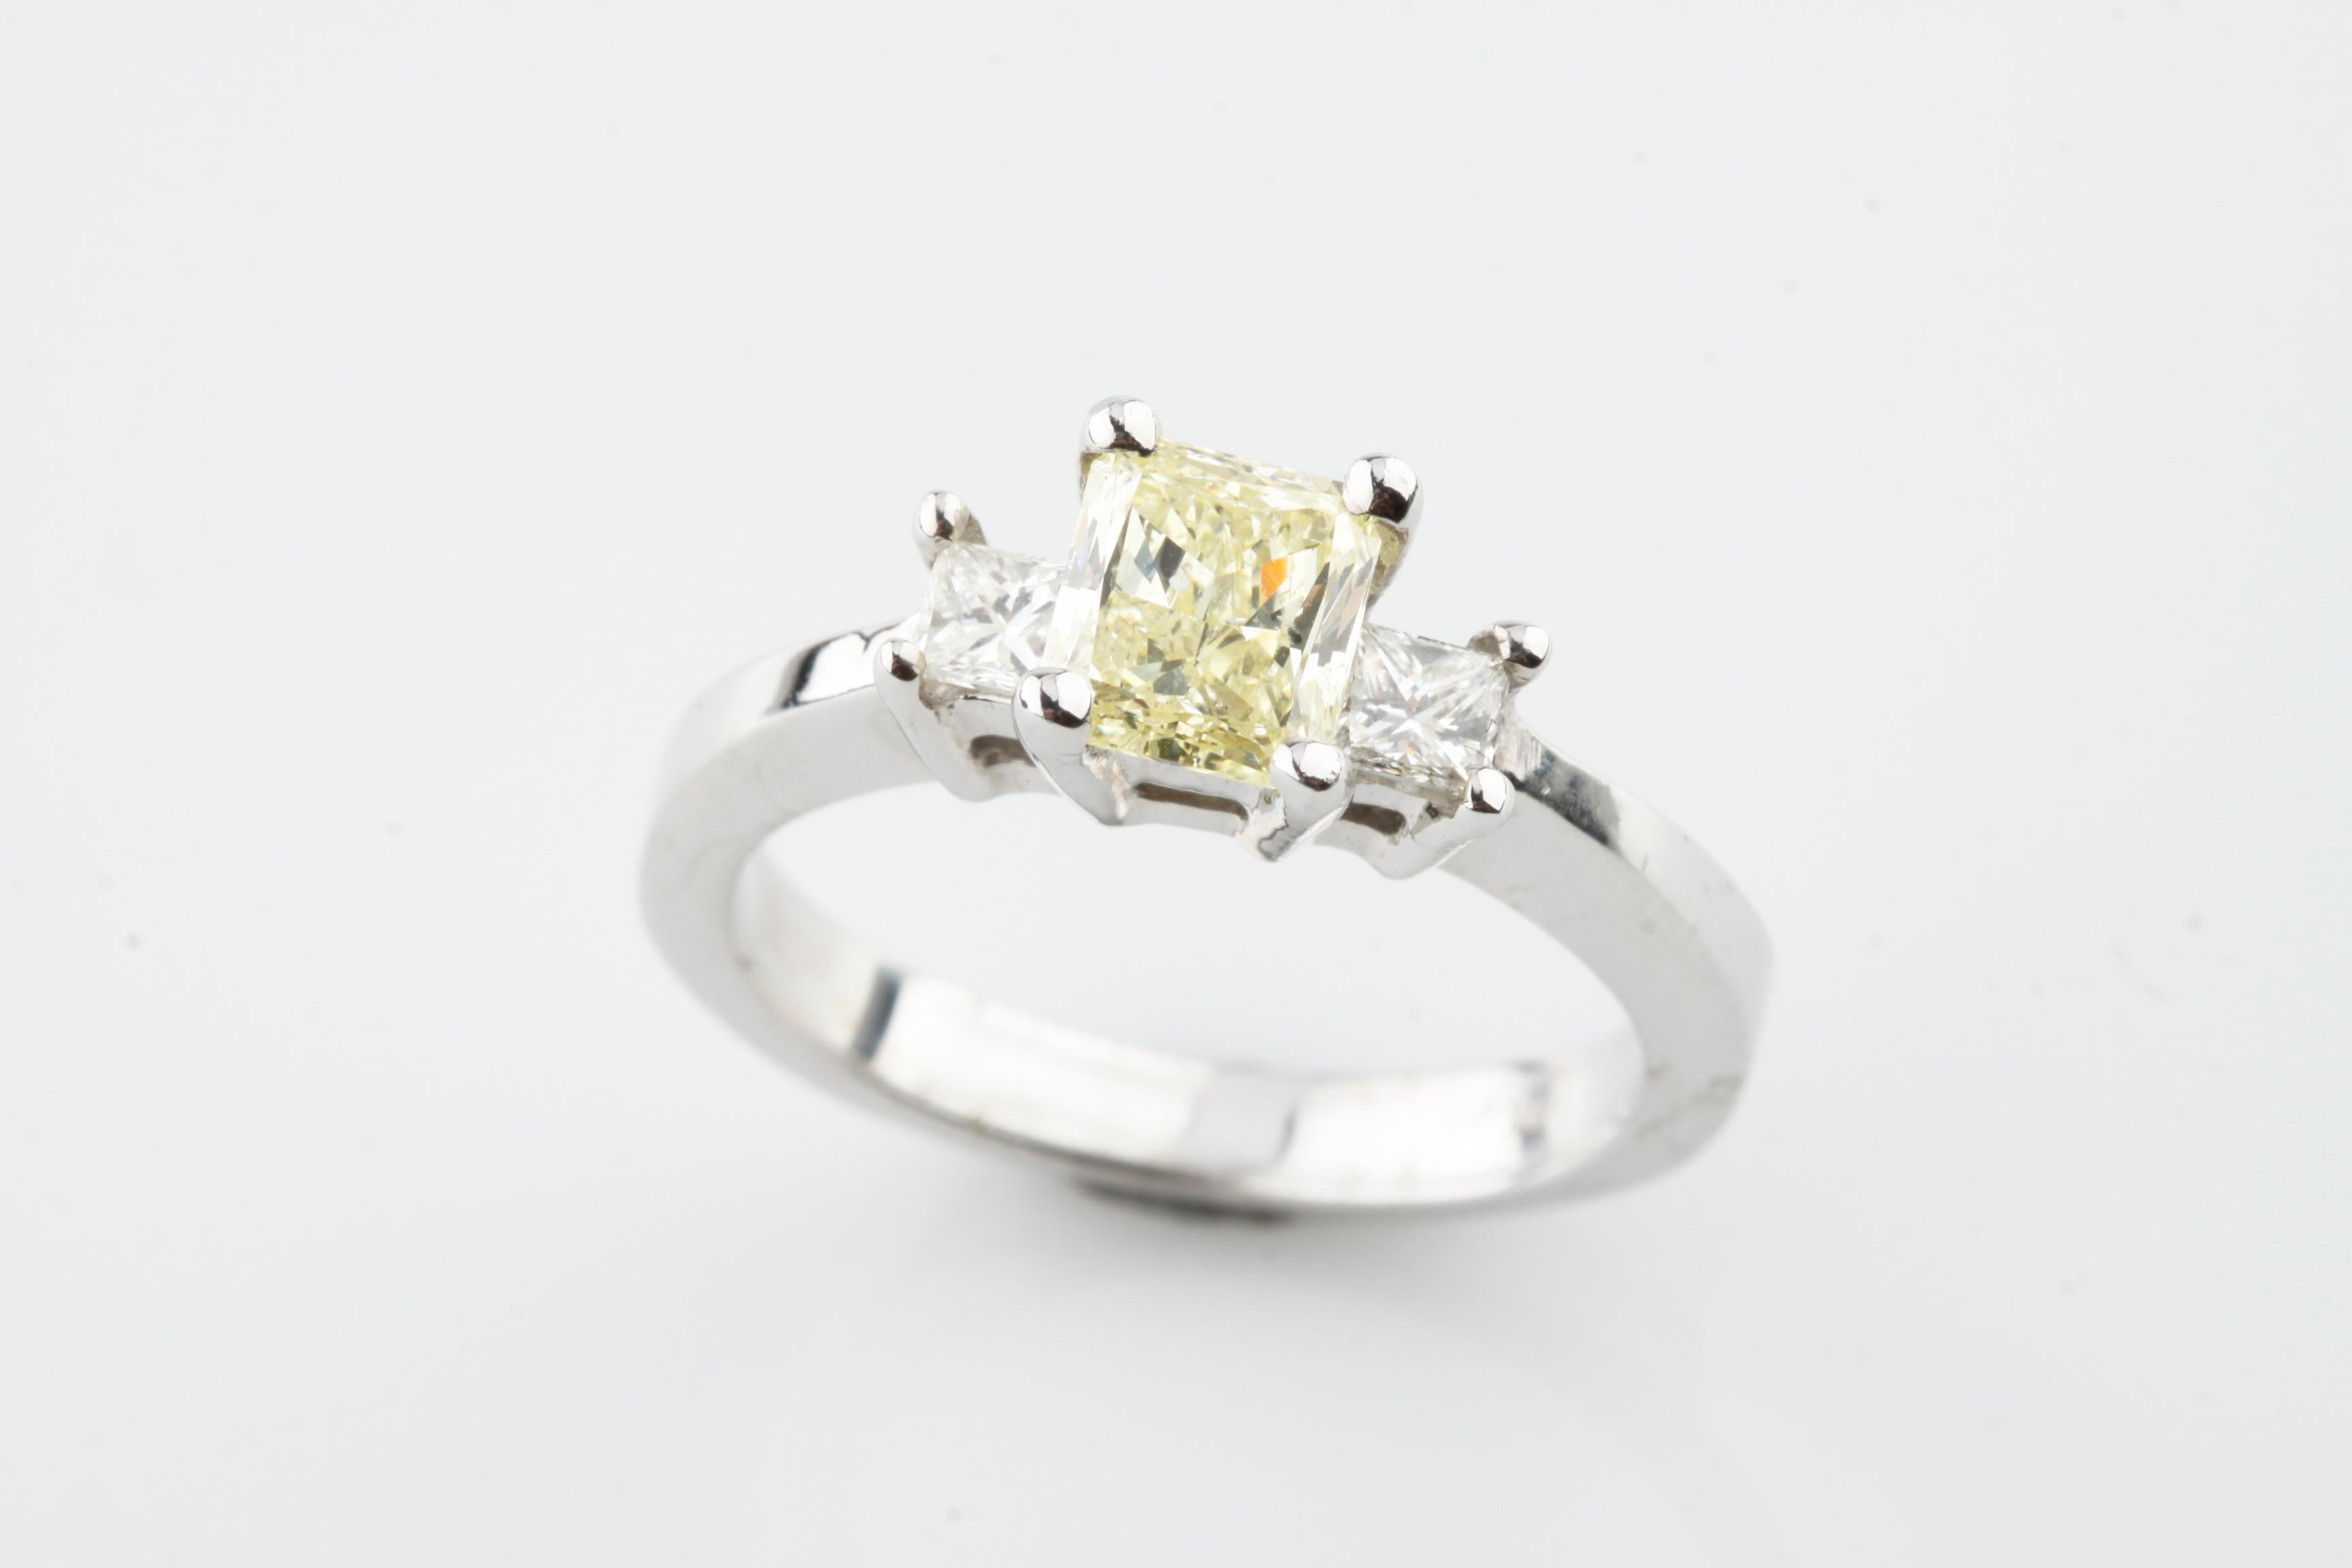 Eine elektronisch geprüfte 14KT Weißgold Damen gegossen Diamant Einheit Ring mit einem glänzenden Finish.
Der Zustand ist gut.
Erkennbar an der Kennzeichnung 